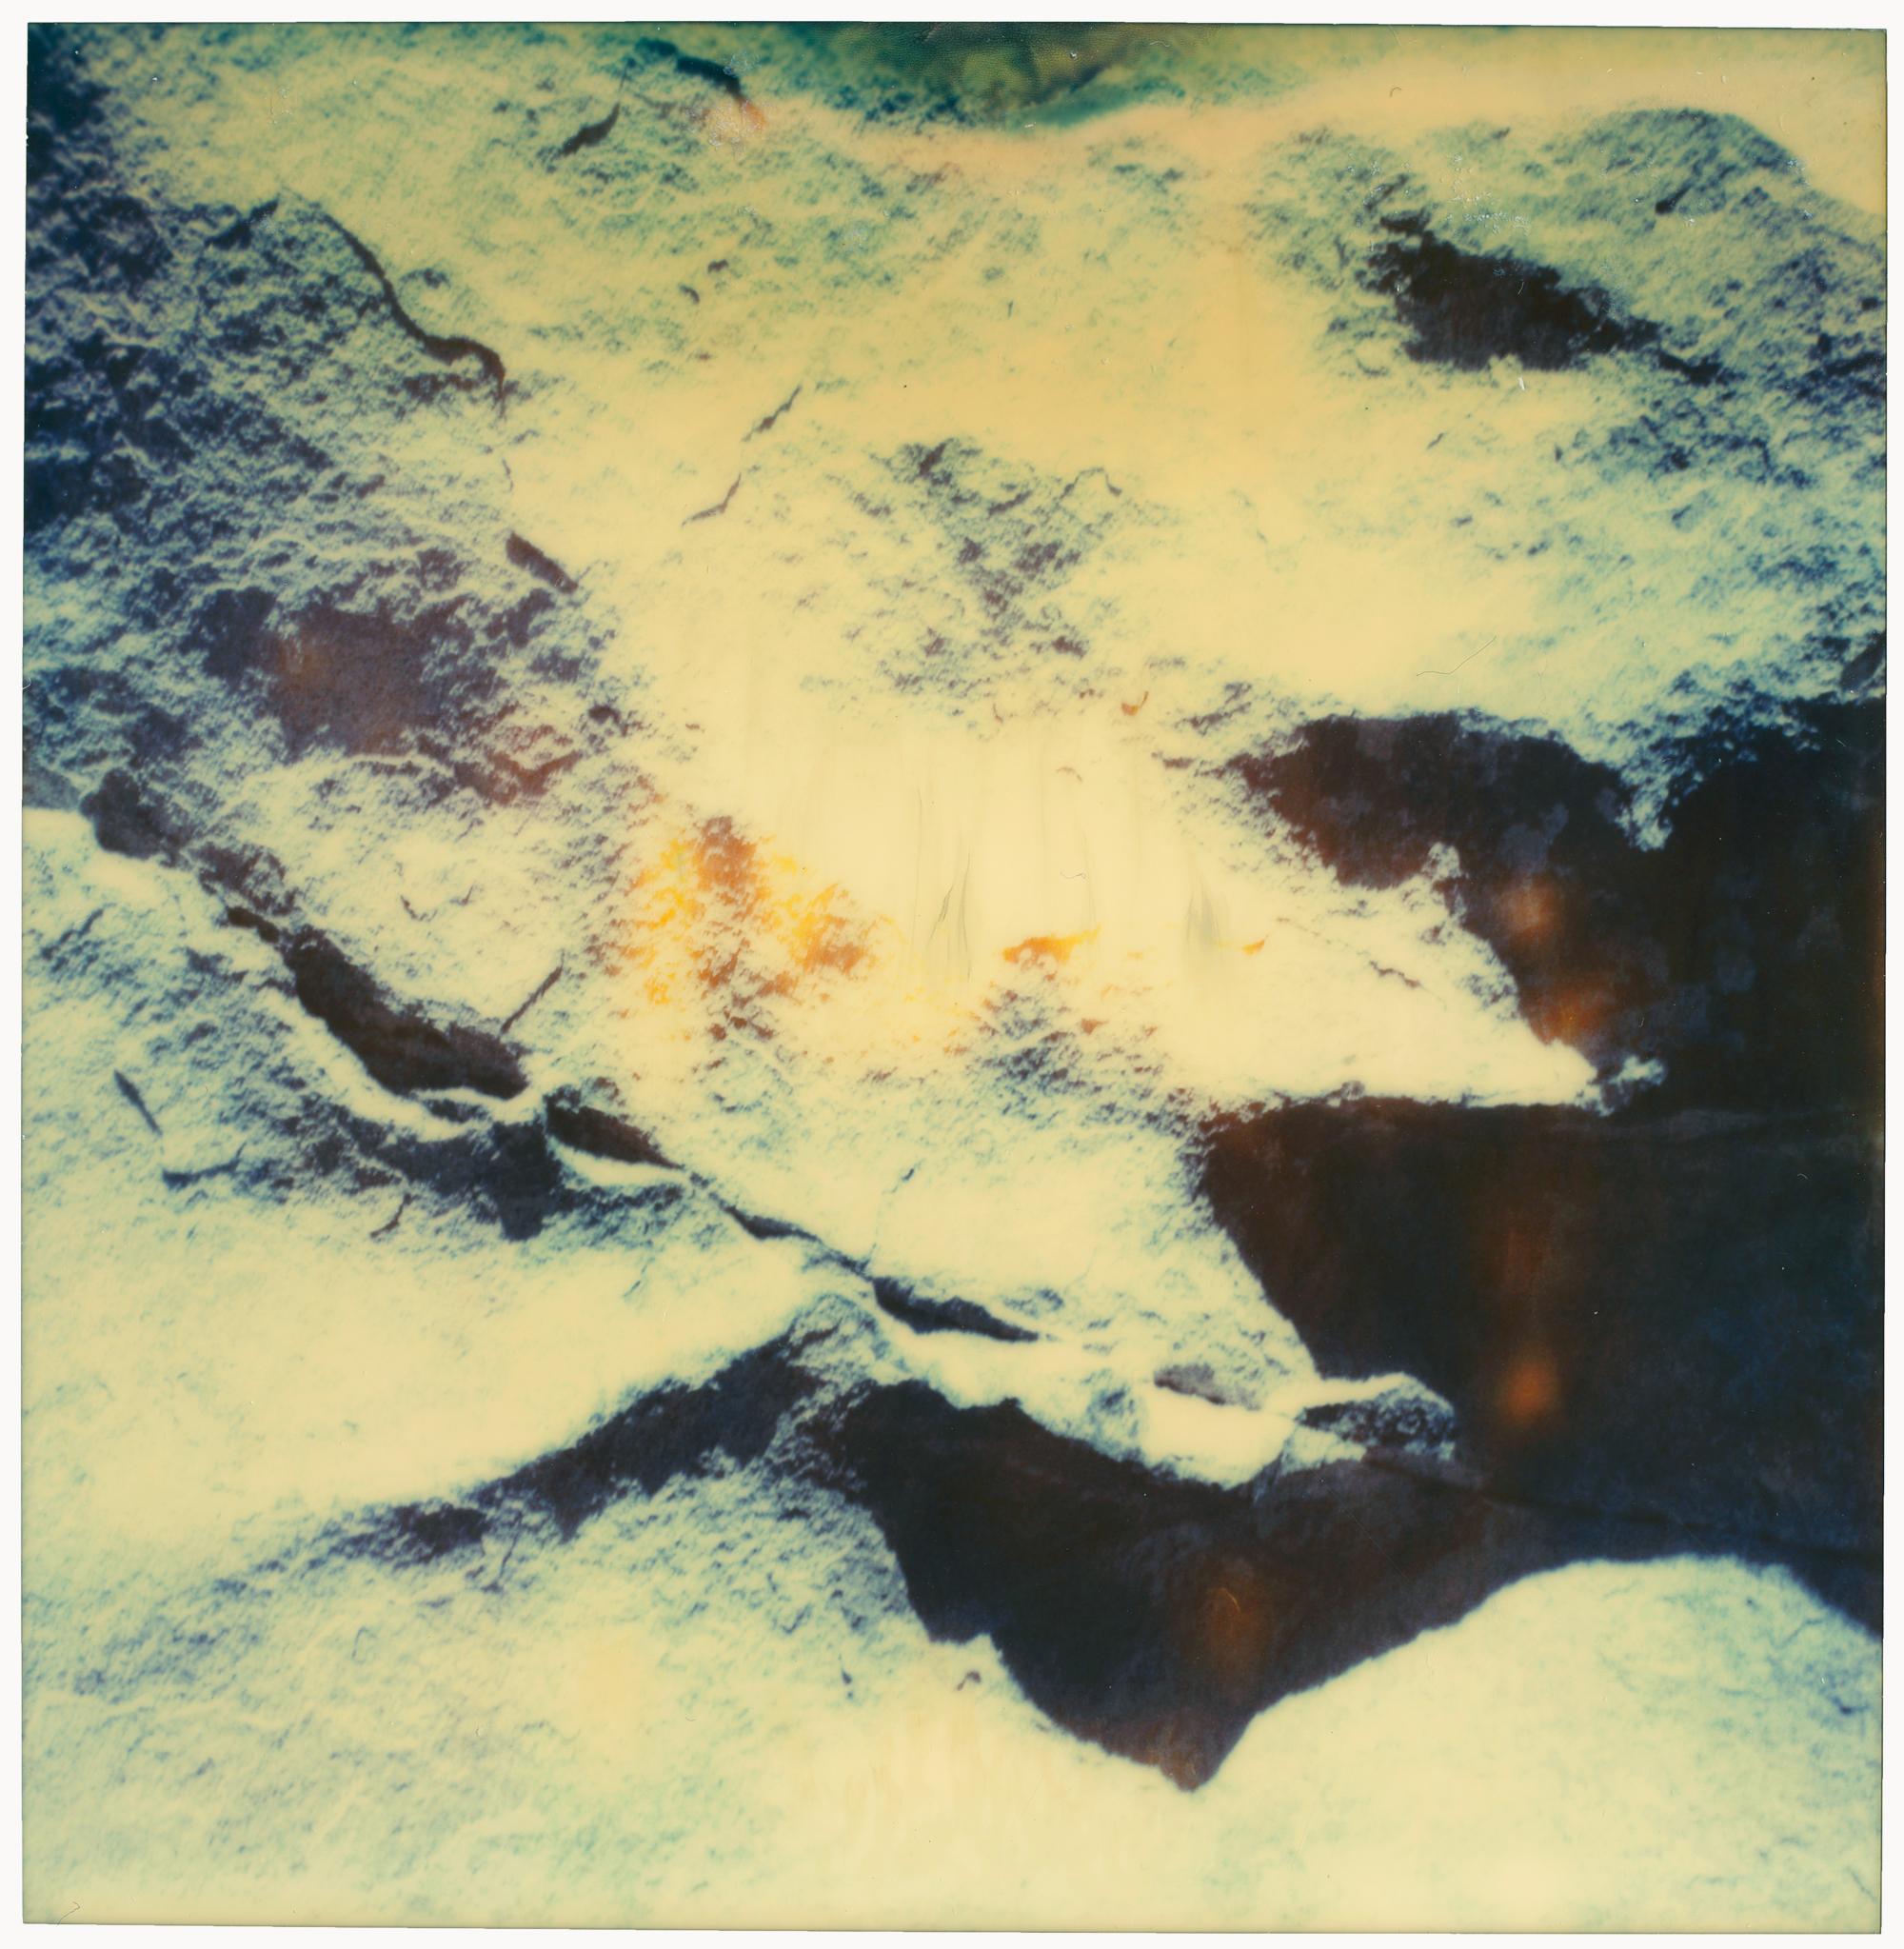 Color Photograph Stefanie Schneider - Paysage lunaire - Planet of the Apes 03 - 21e siècle, Polaroïd, Abstrait